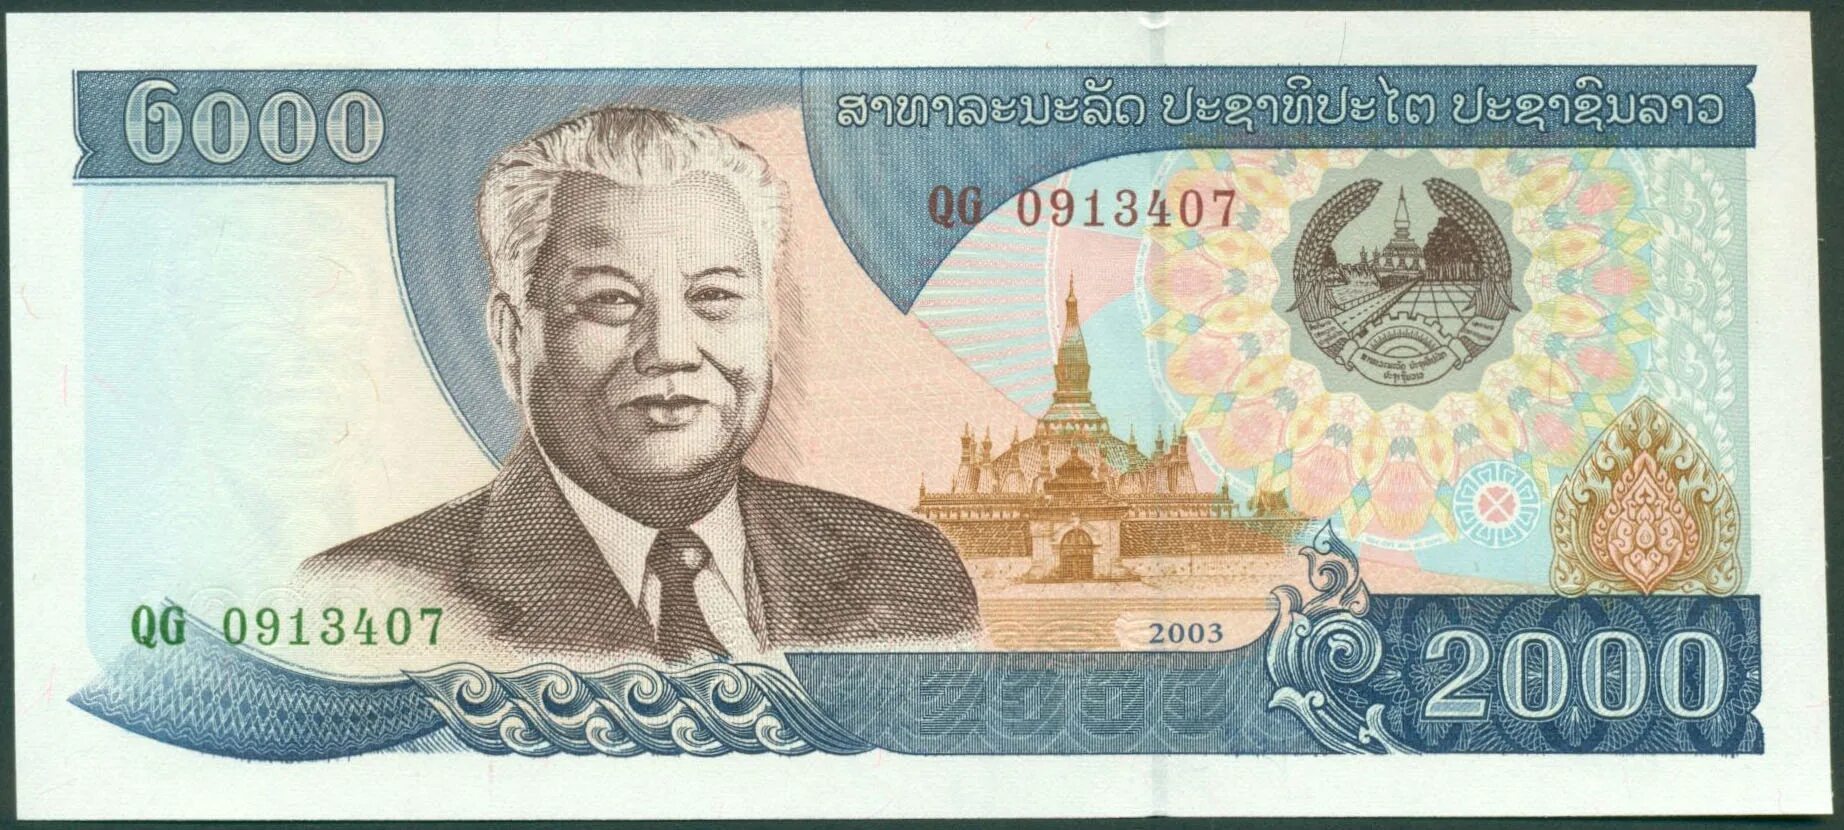 Купюры 2003. Банкнота Лаоса 2000 КИП 2003. Банкнота Лаос 100 кипов. 2000 КИП Лаос 2011. Валюта Лаоса.